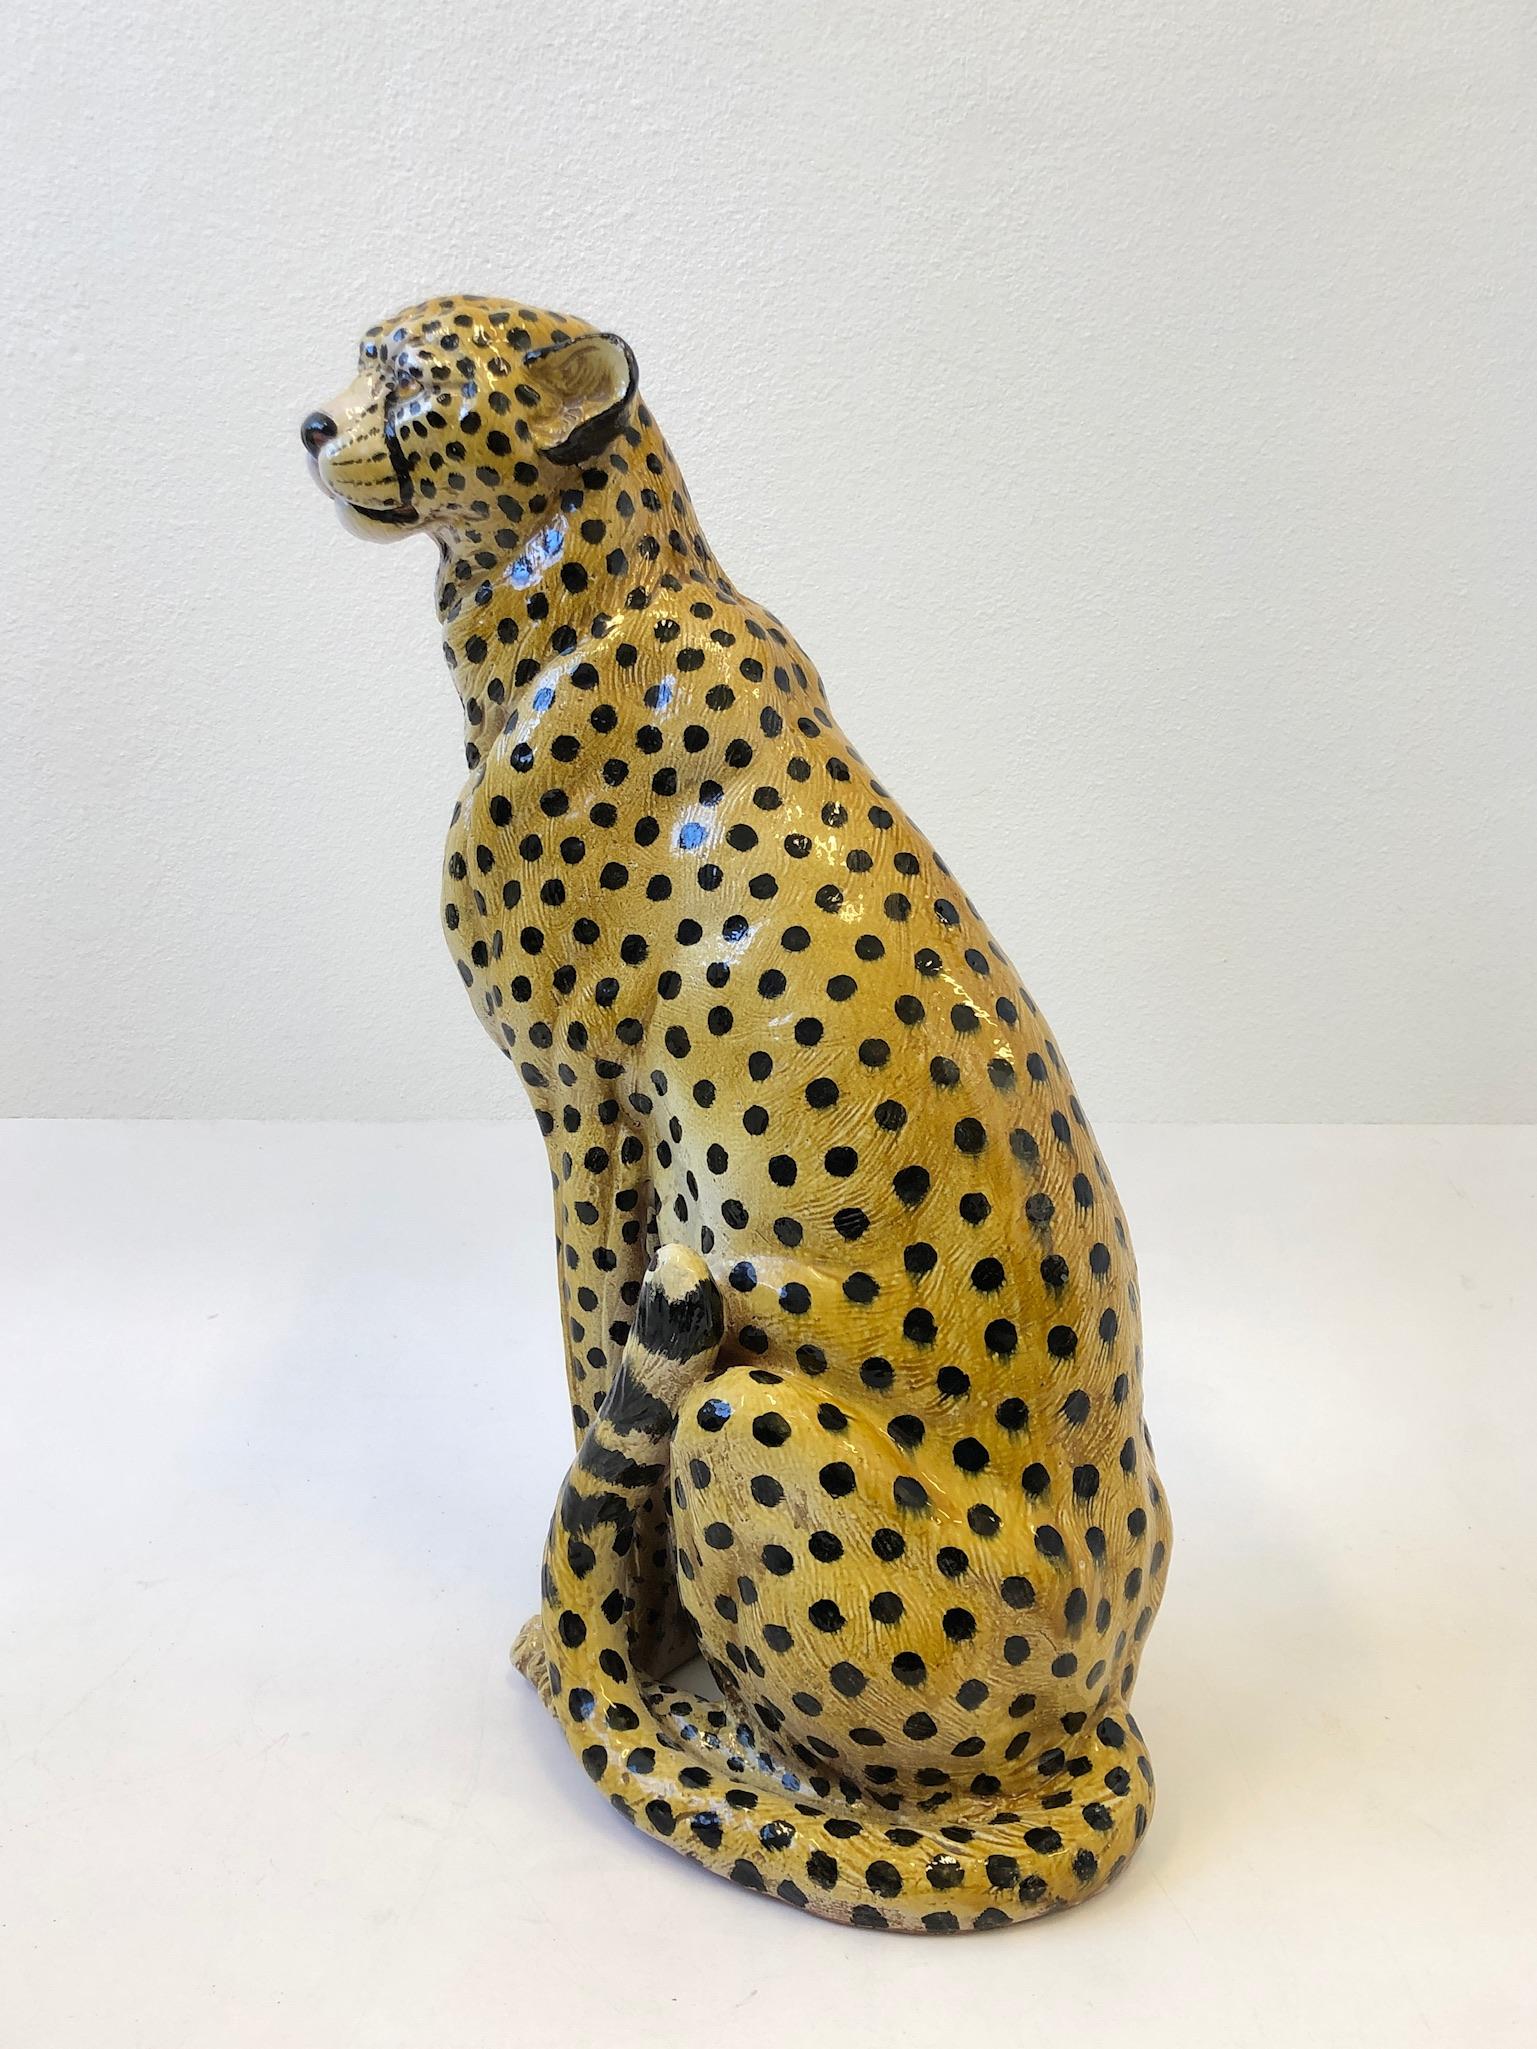 Große italienische:: handbemalte Gepardenskulptur aus Keramik aus den 1960er Jahren. Die Skulptur ist in schönem Zustand mit geringen altersbedingten Gebrauchsspuren (siehe Detailfotos). 

Abmessungen: 30.5